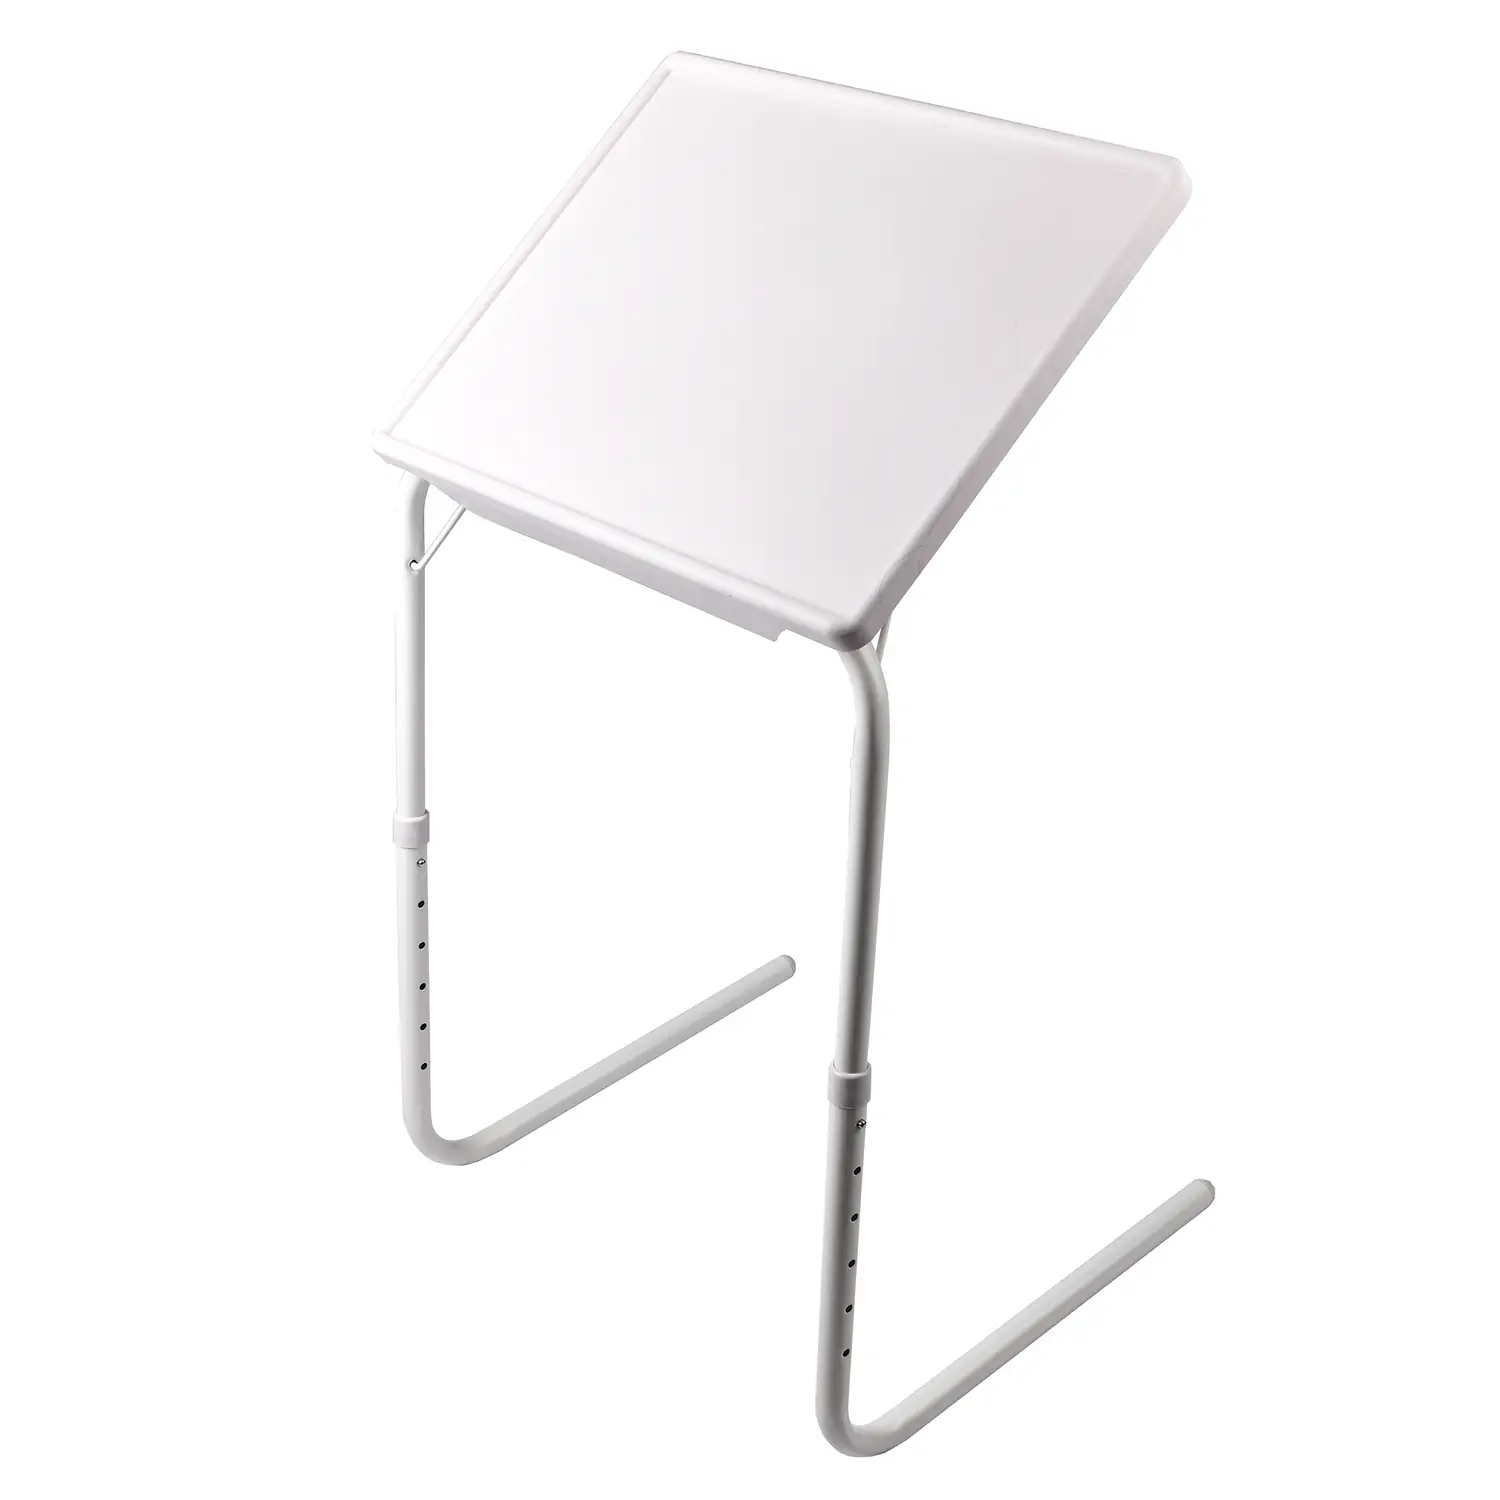 Столик для ноутбука Supretto Table Mate II раскладной портативный (B126) - фото 2